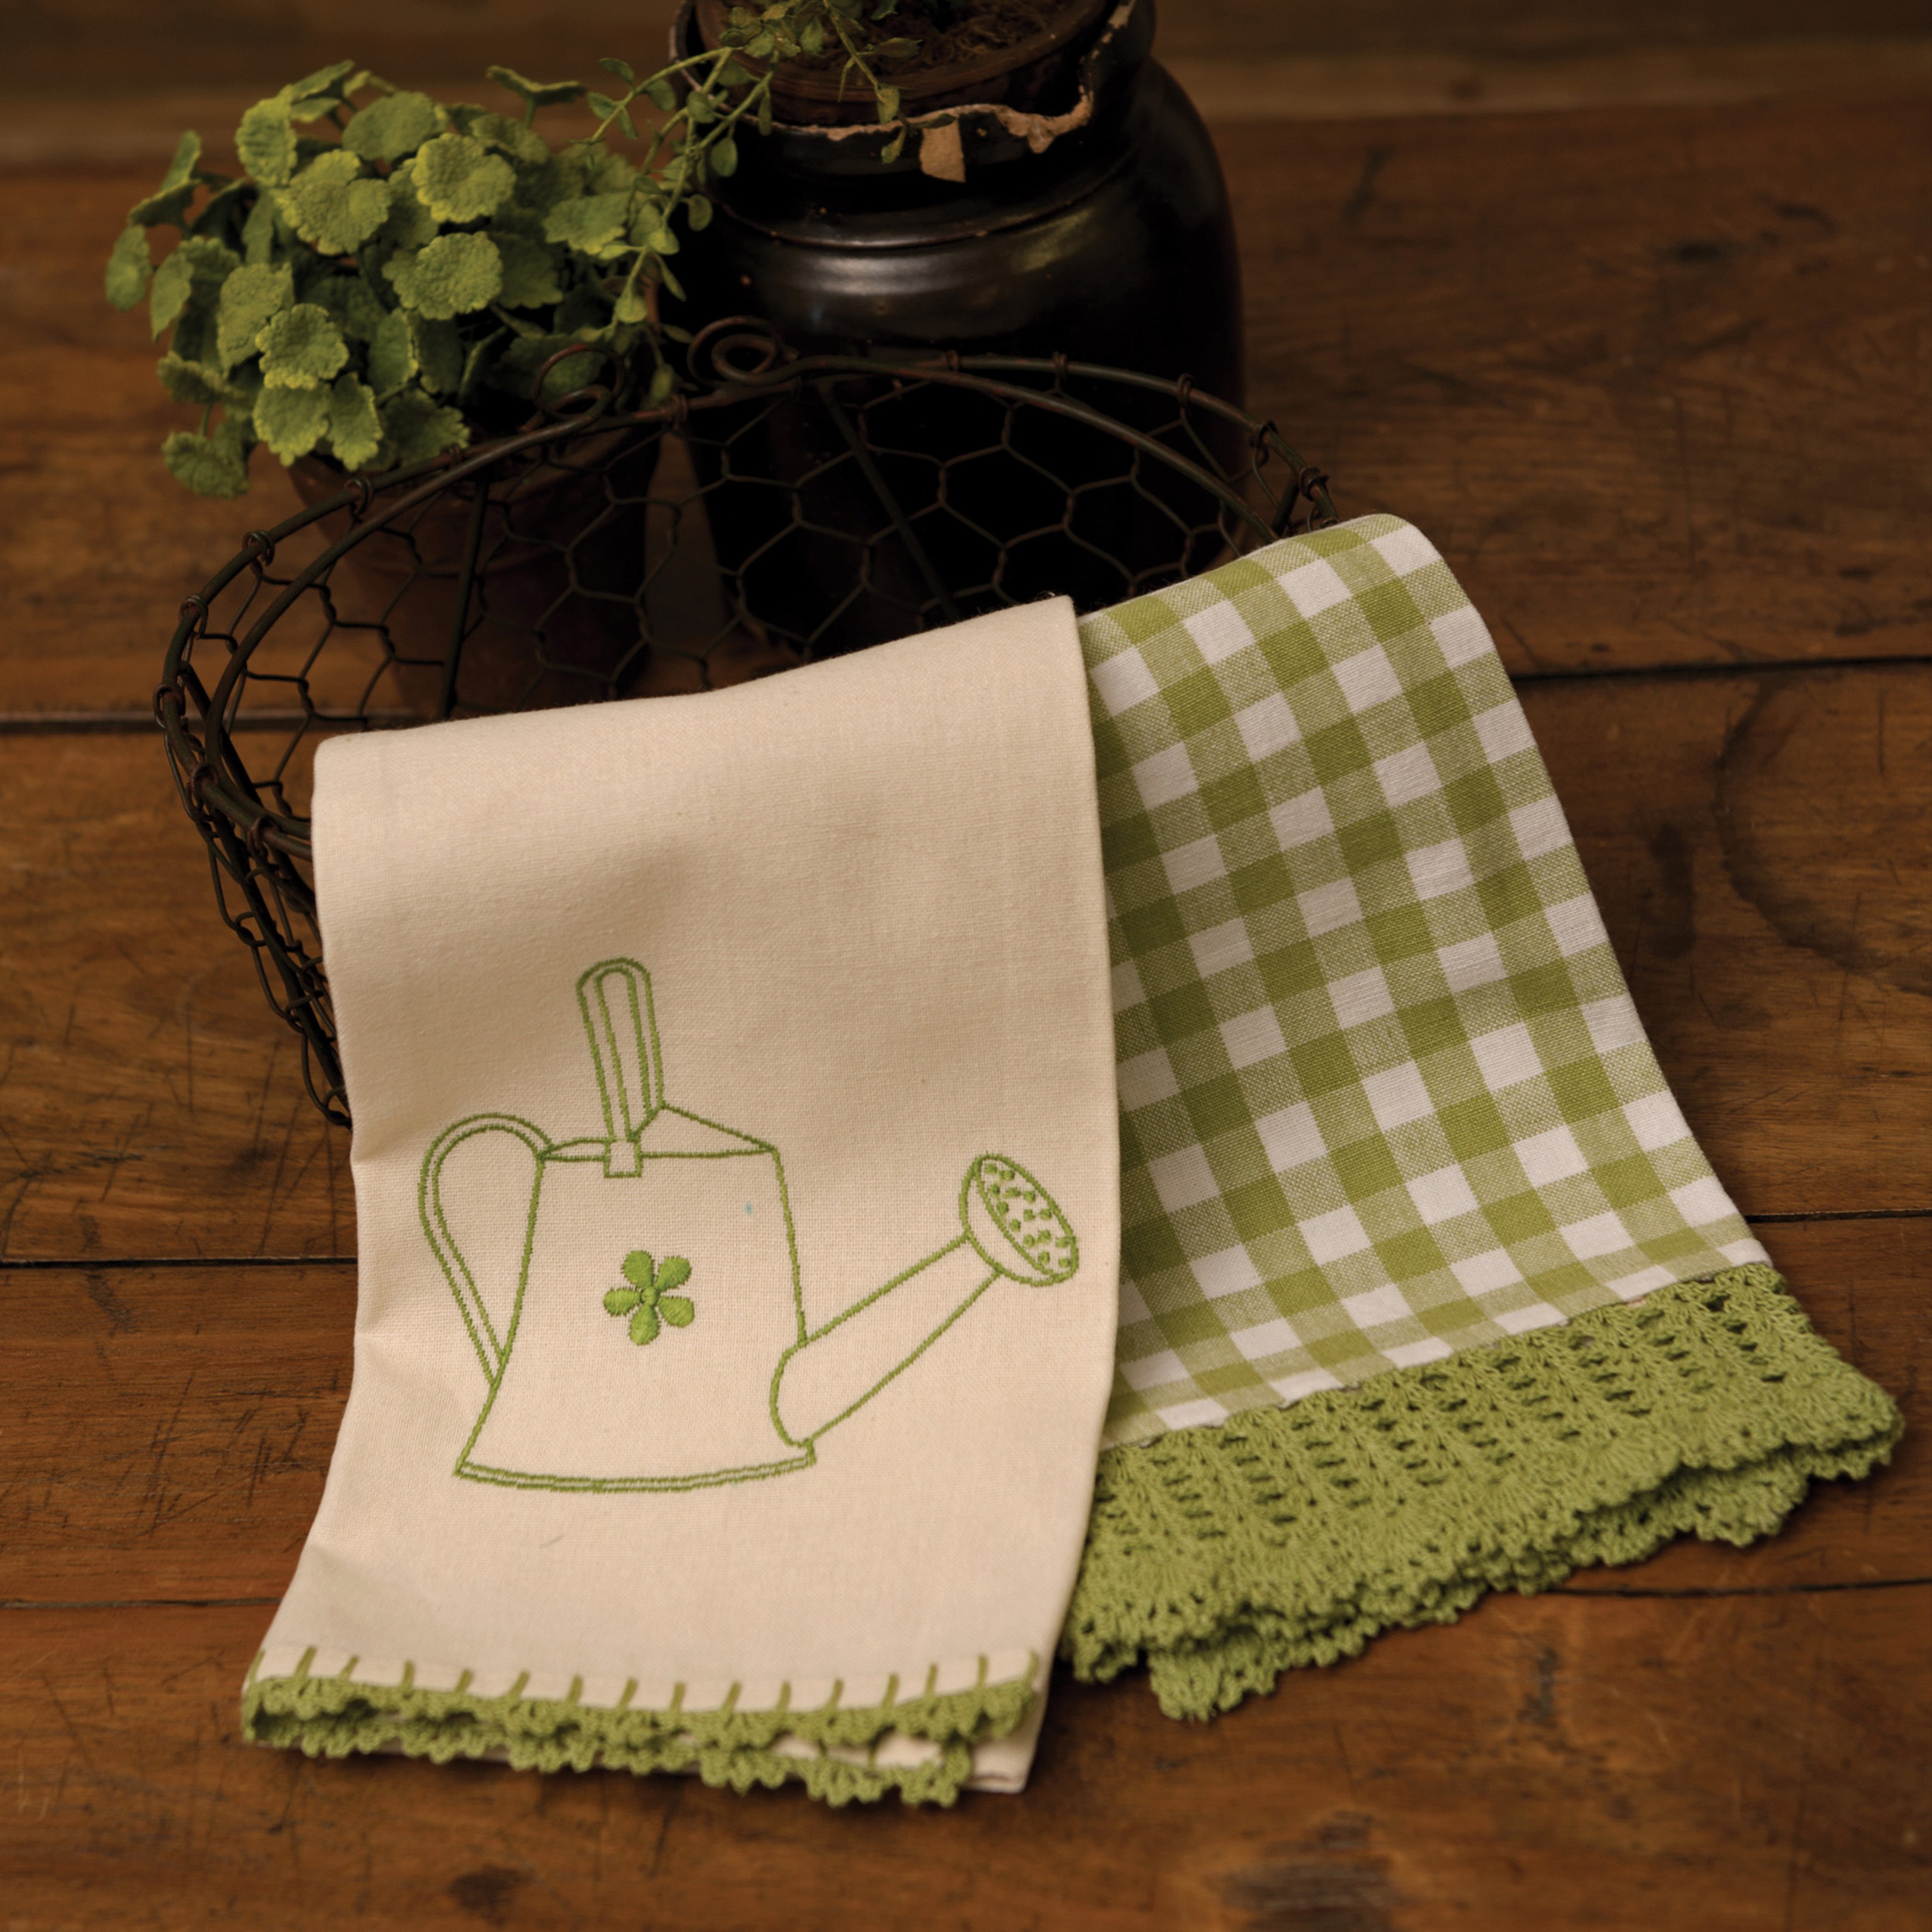 Petit Checks in Ash Grey Crochet Kitchen Towel